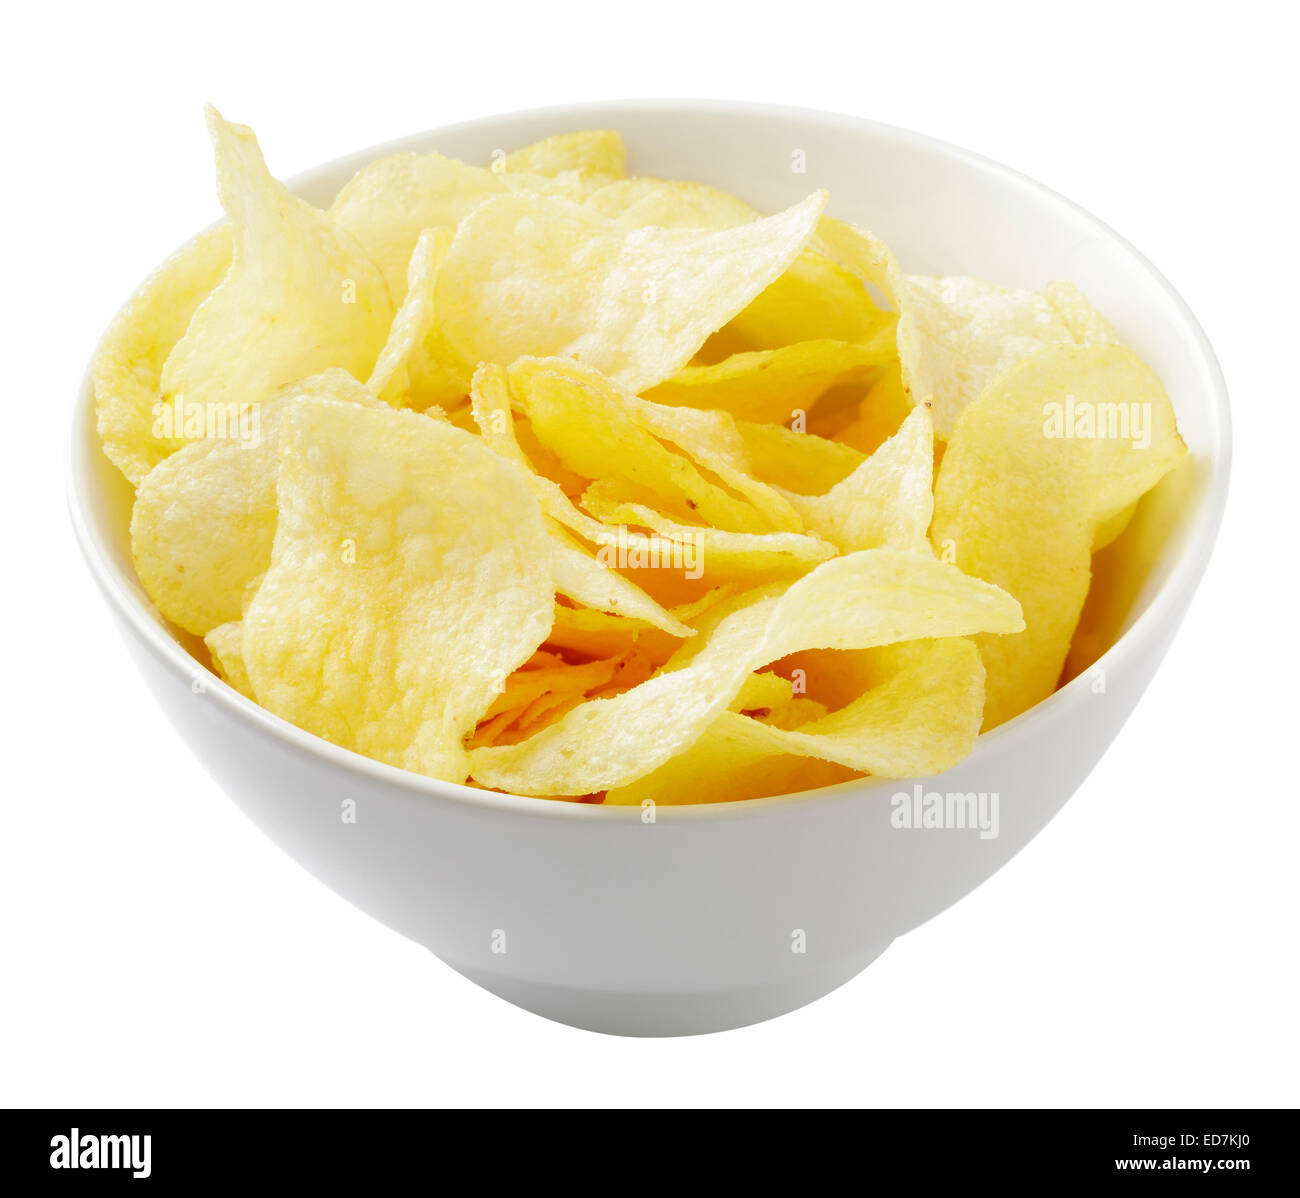 potato crisps / potato chips Stock Photo